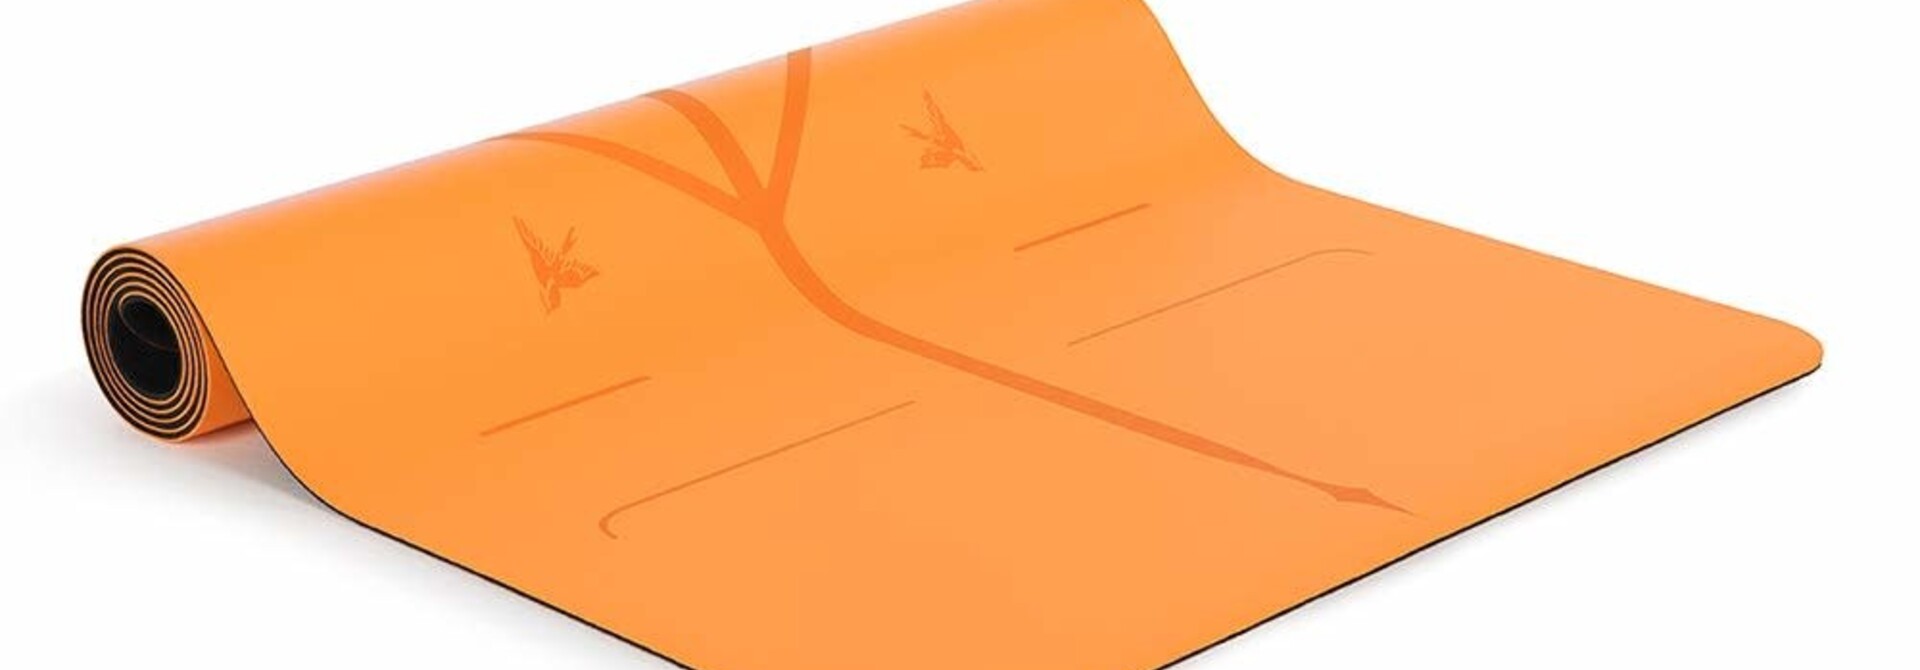 Liforme Yoga Mat - Vibrant Orange